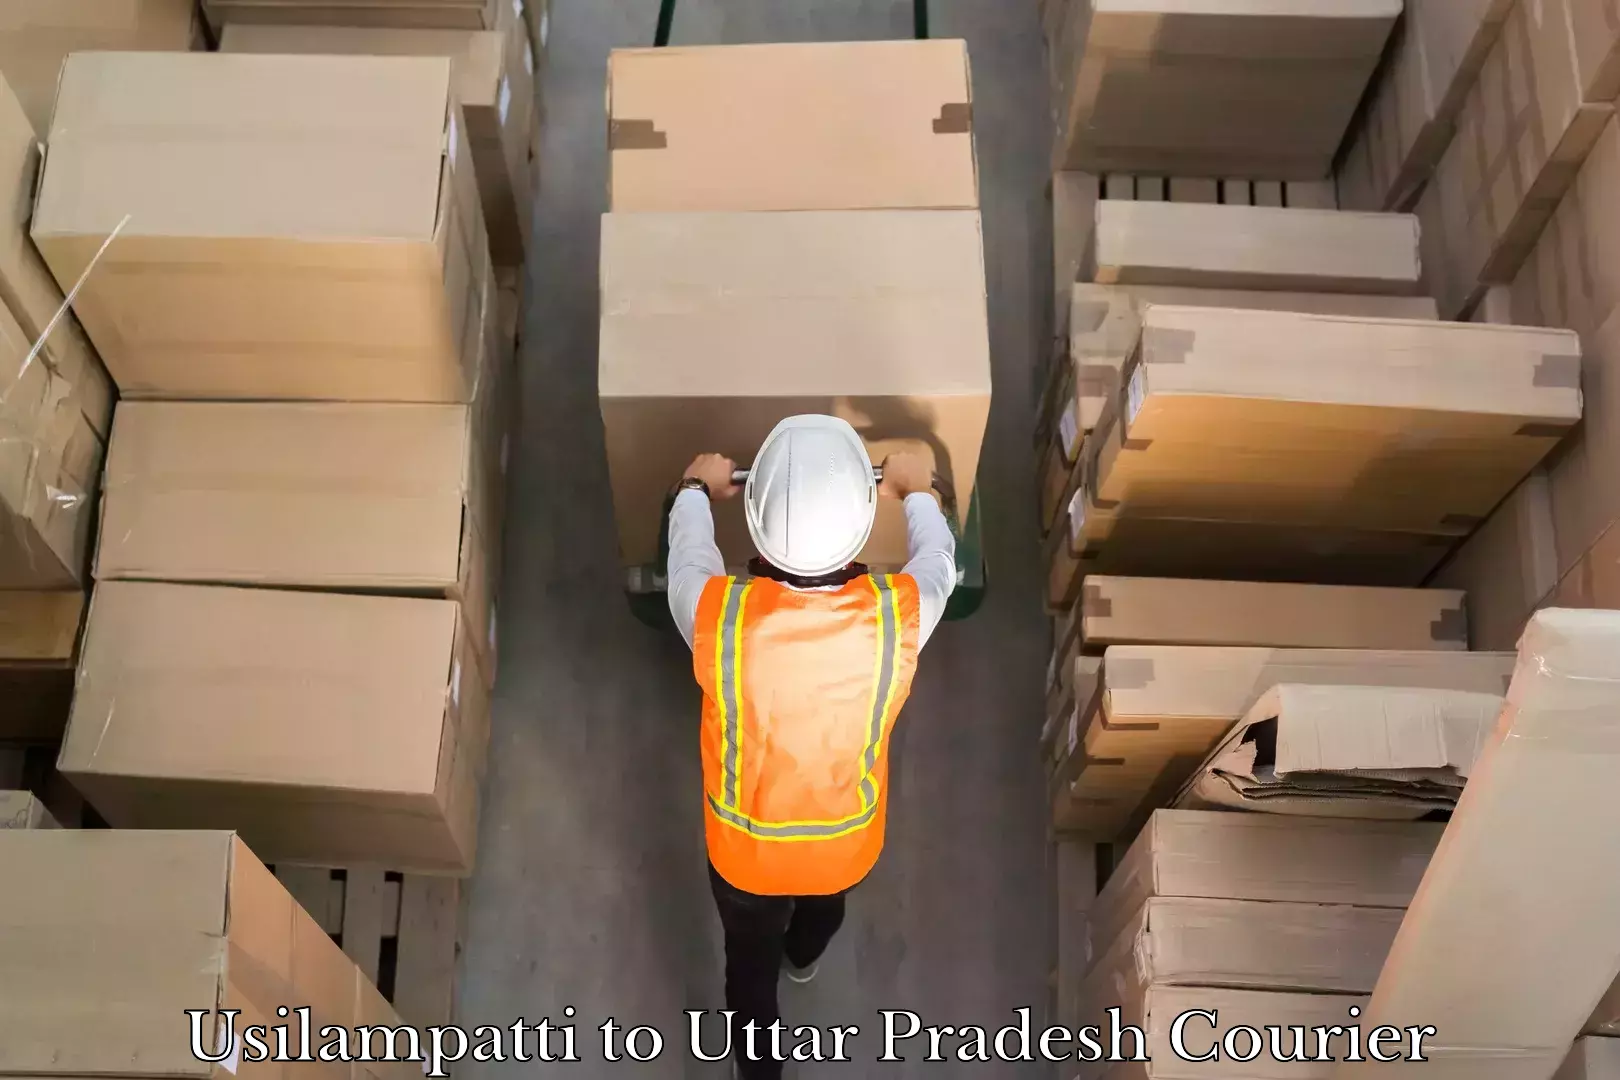 Courier service comparison Usilampatti to Uttar Pradesh